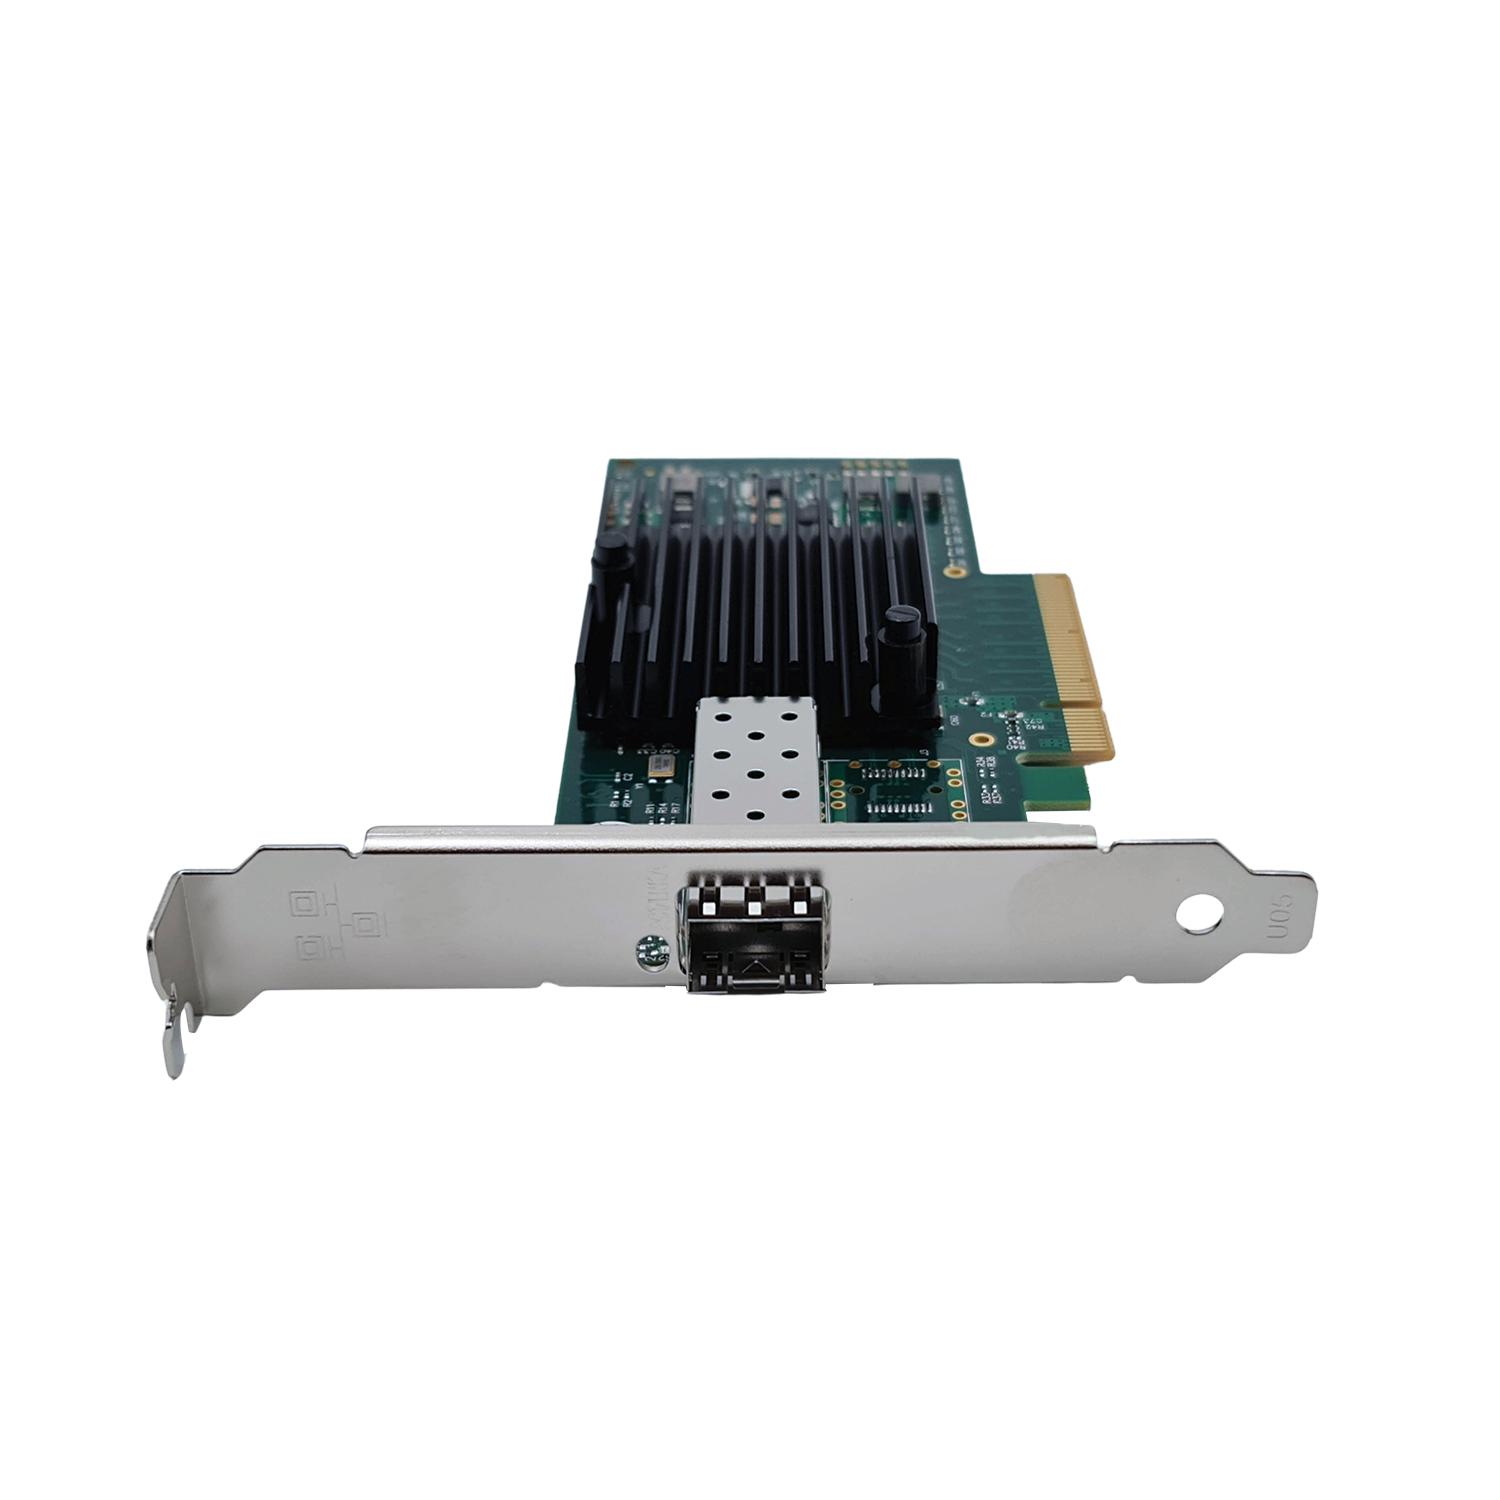 PCIe x8 to 10GbE LAN Card 1SFP (Intel Chipset)